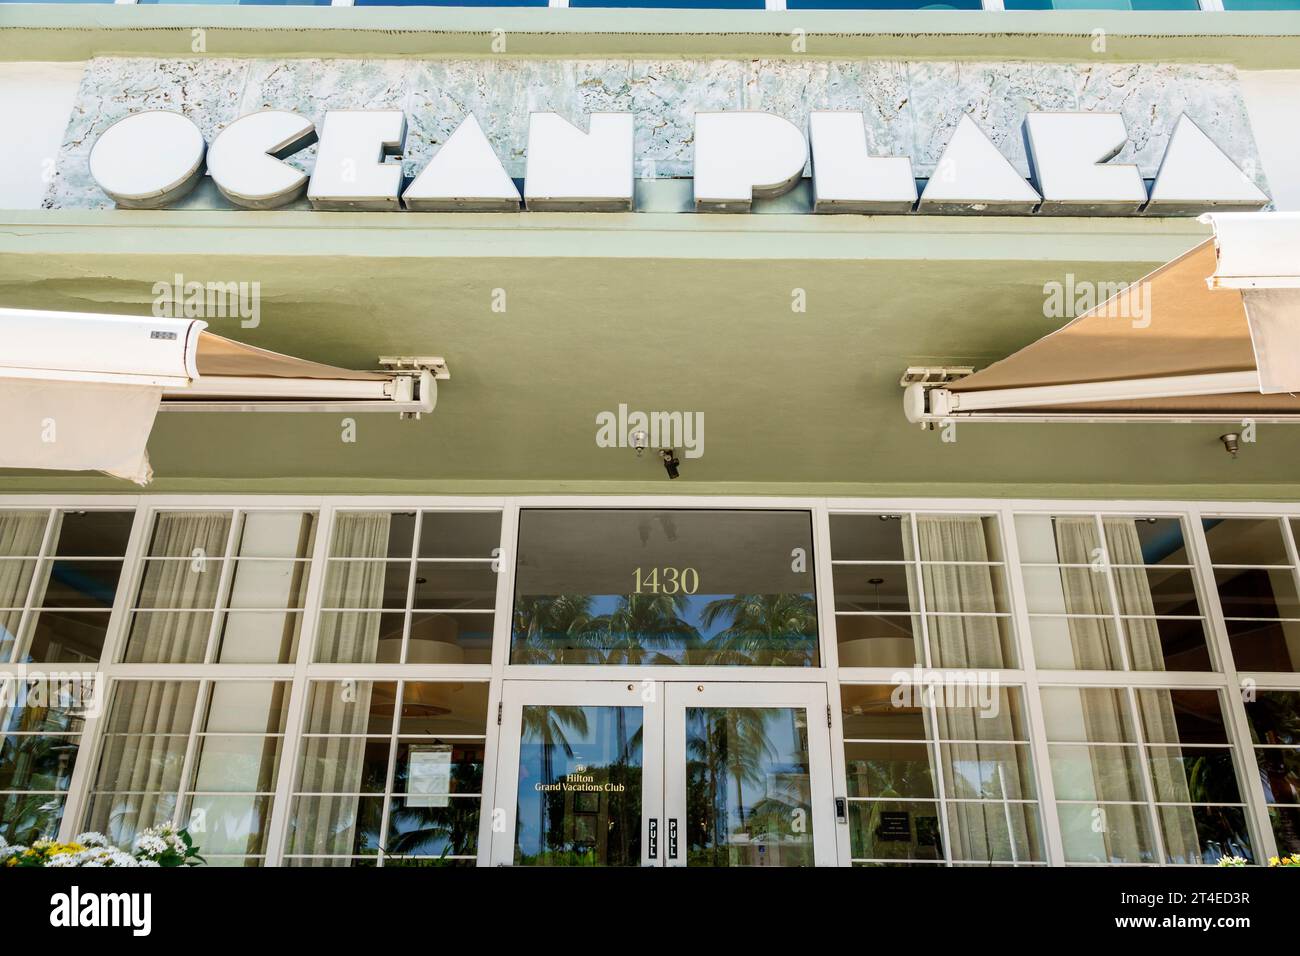 Miami Beach Floride, extérieur, entrée principale de l'hôtel, Ocean Drive Hilton Grand Vacations Club McAlpin Ocean Plaza Miami, hôtel motel Banque D'Images